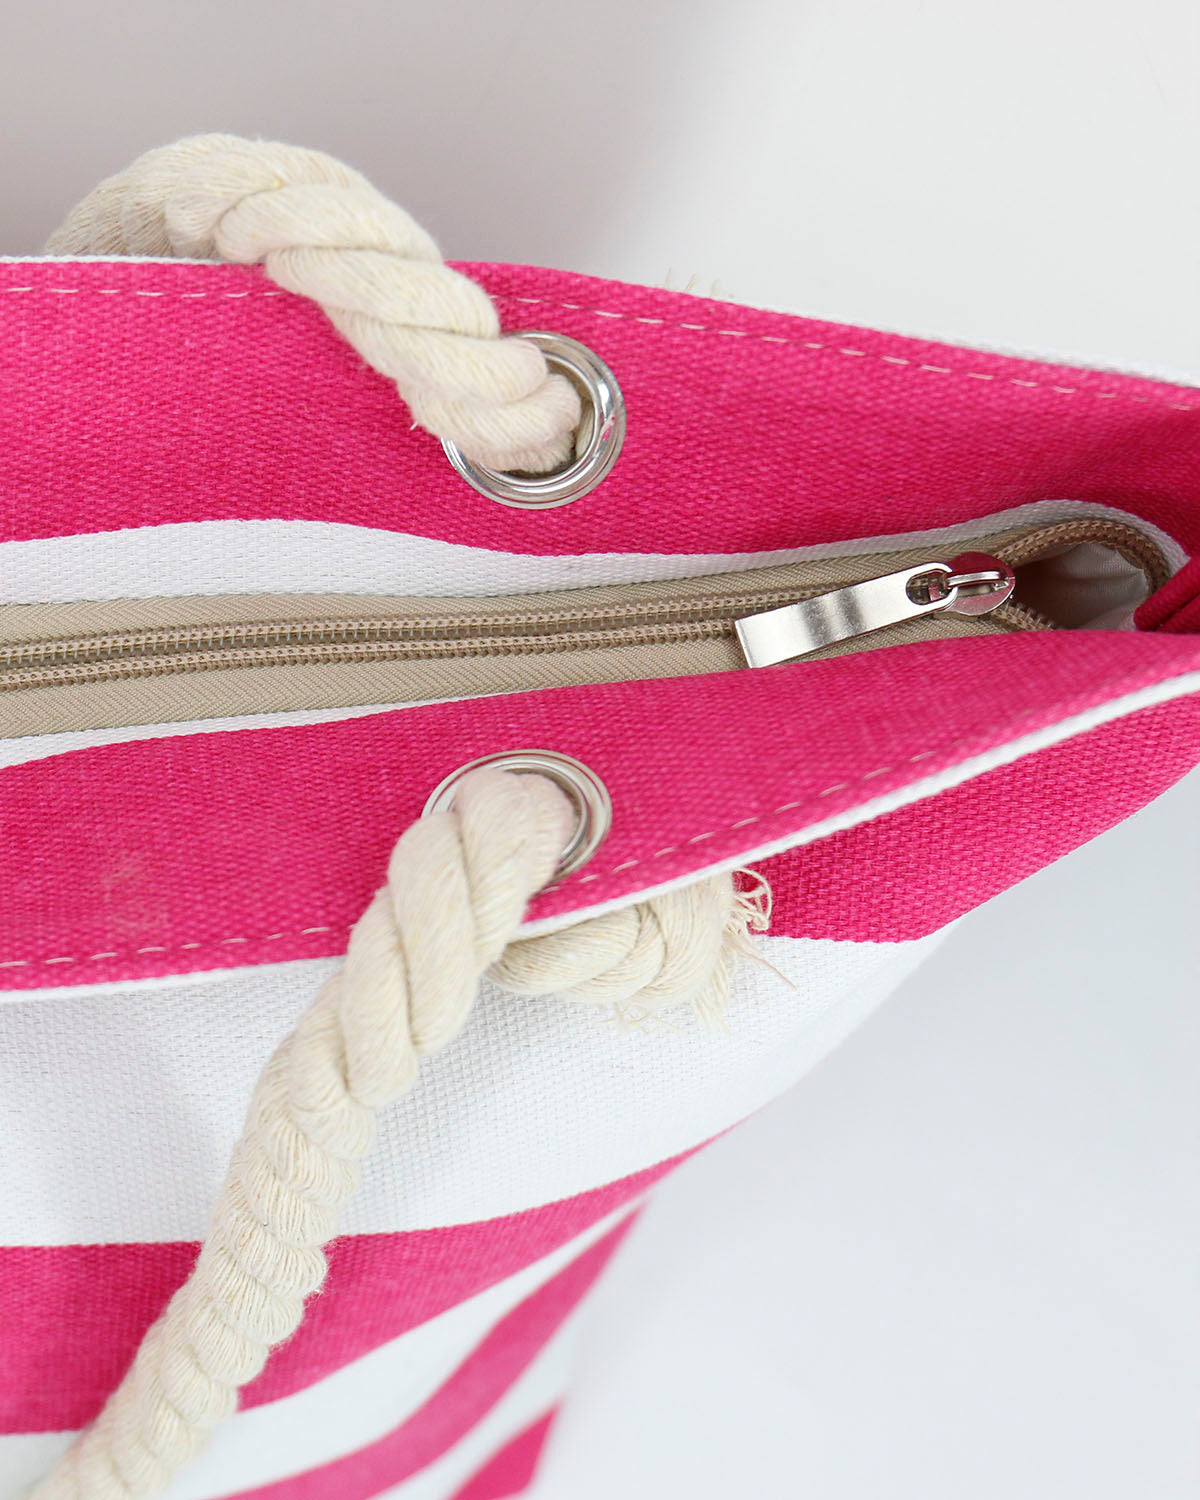 Summer Tote Bag Pink/White Stripe Zipper Close Up